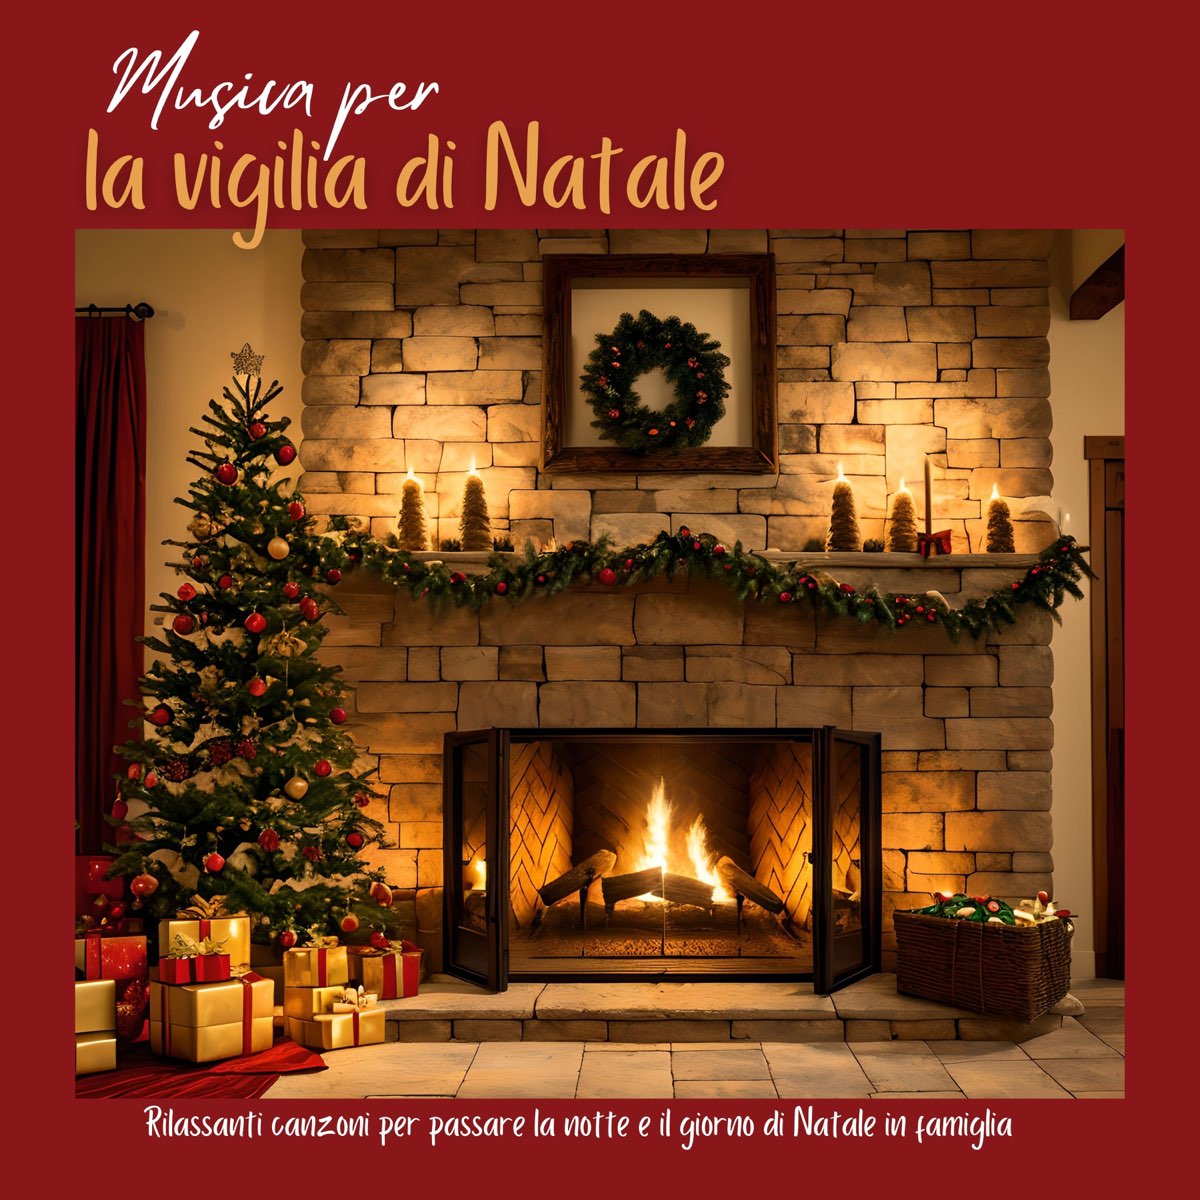 Musica per la vigilia di Natale - Rilassanti canzoni per passare la notte e  il giorno di Natale in famiglia - Album di Tempo Natalizio - Apple Music